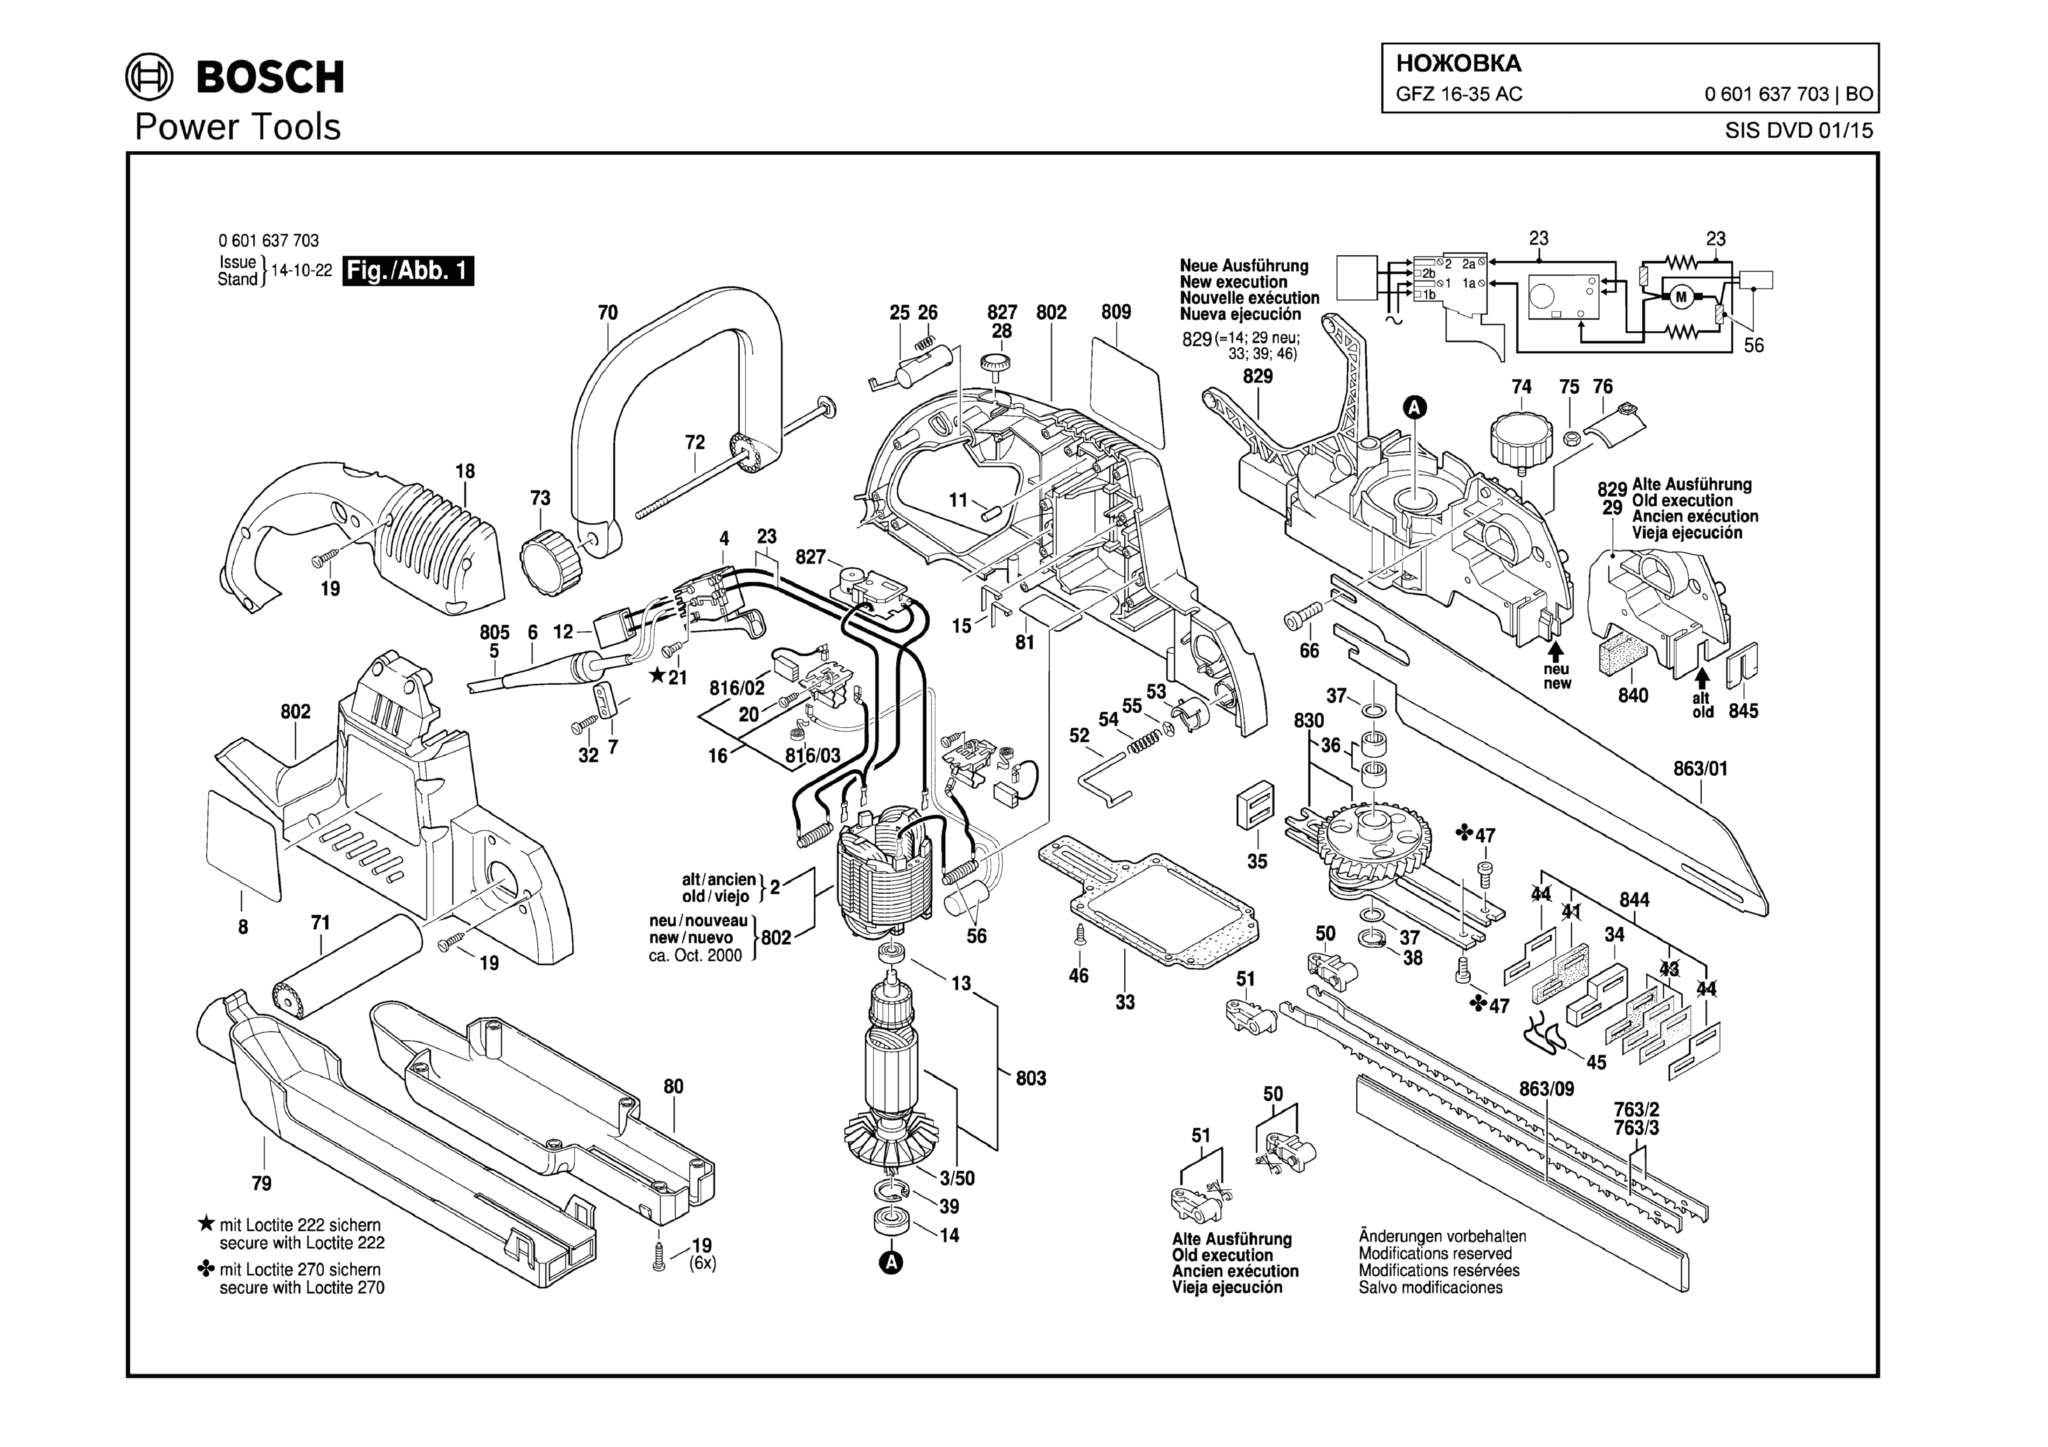 Запчасти, схема и деталировка Bosch GFZ 16-35 AC (ТИП 0601637703)